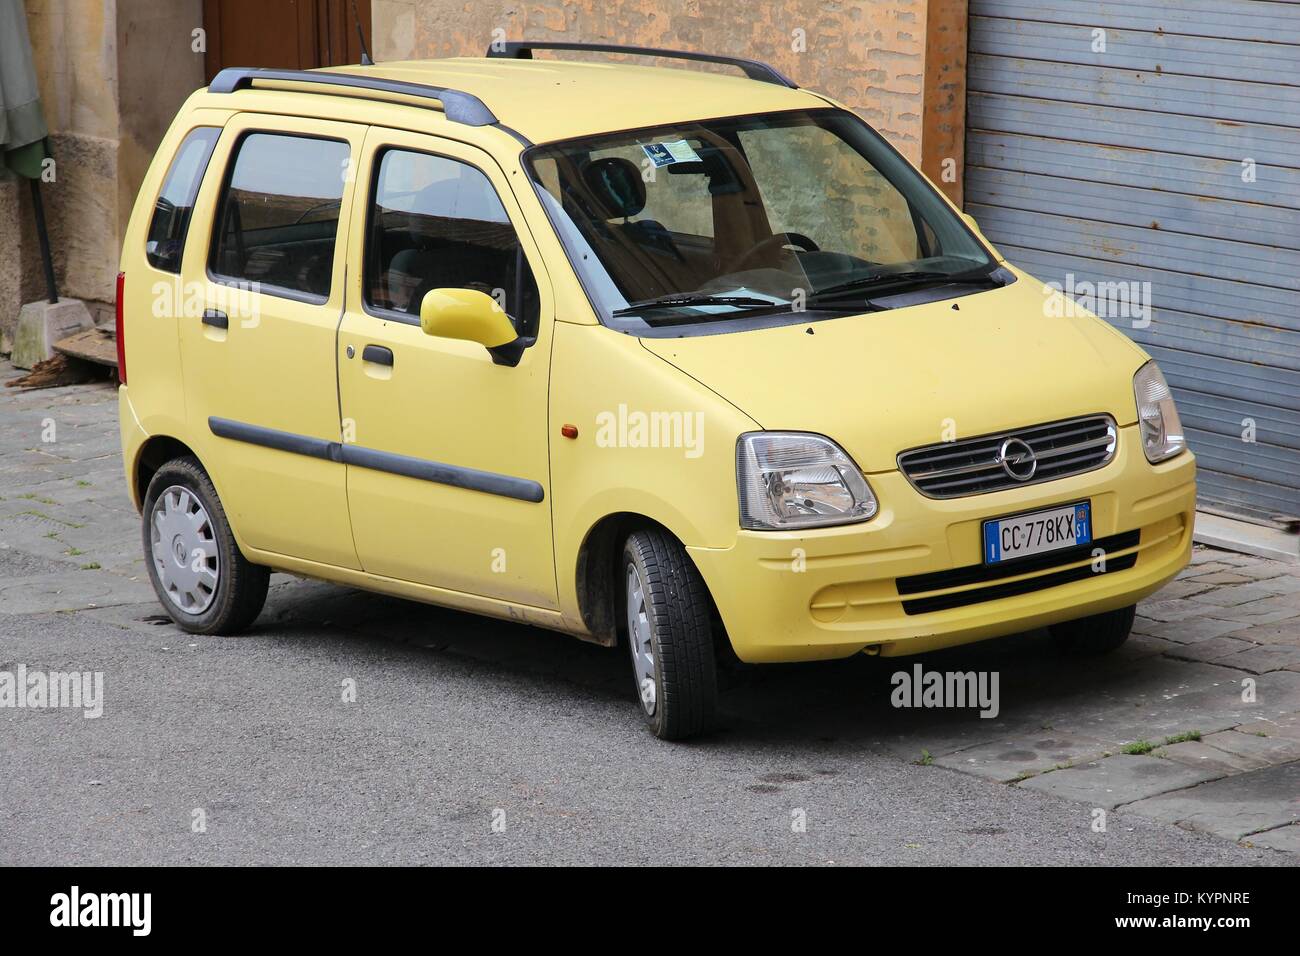 SIENA, Italia - 3 Maggio 2015: Opel Agila auto parcheggiate in Siena, Italia. Agila è stata fabbricata negli anni 2000-2015. Foto Stock